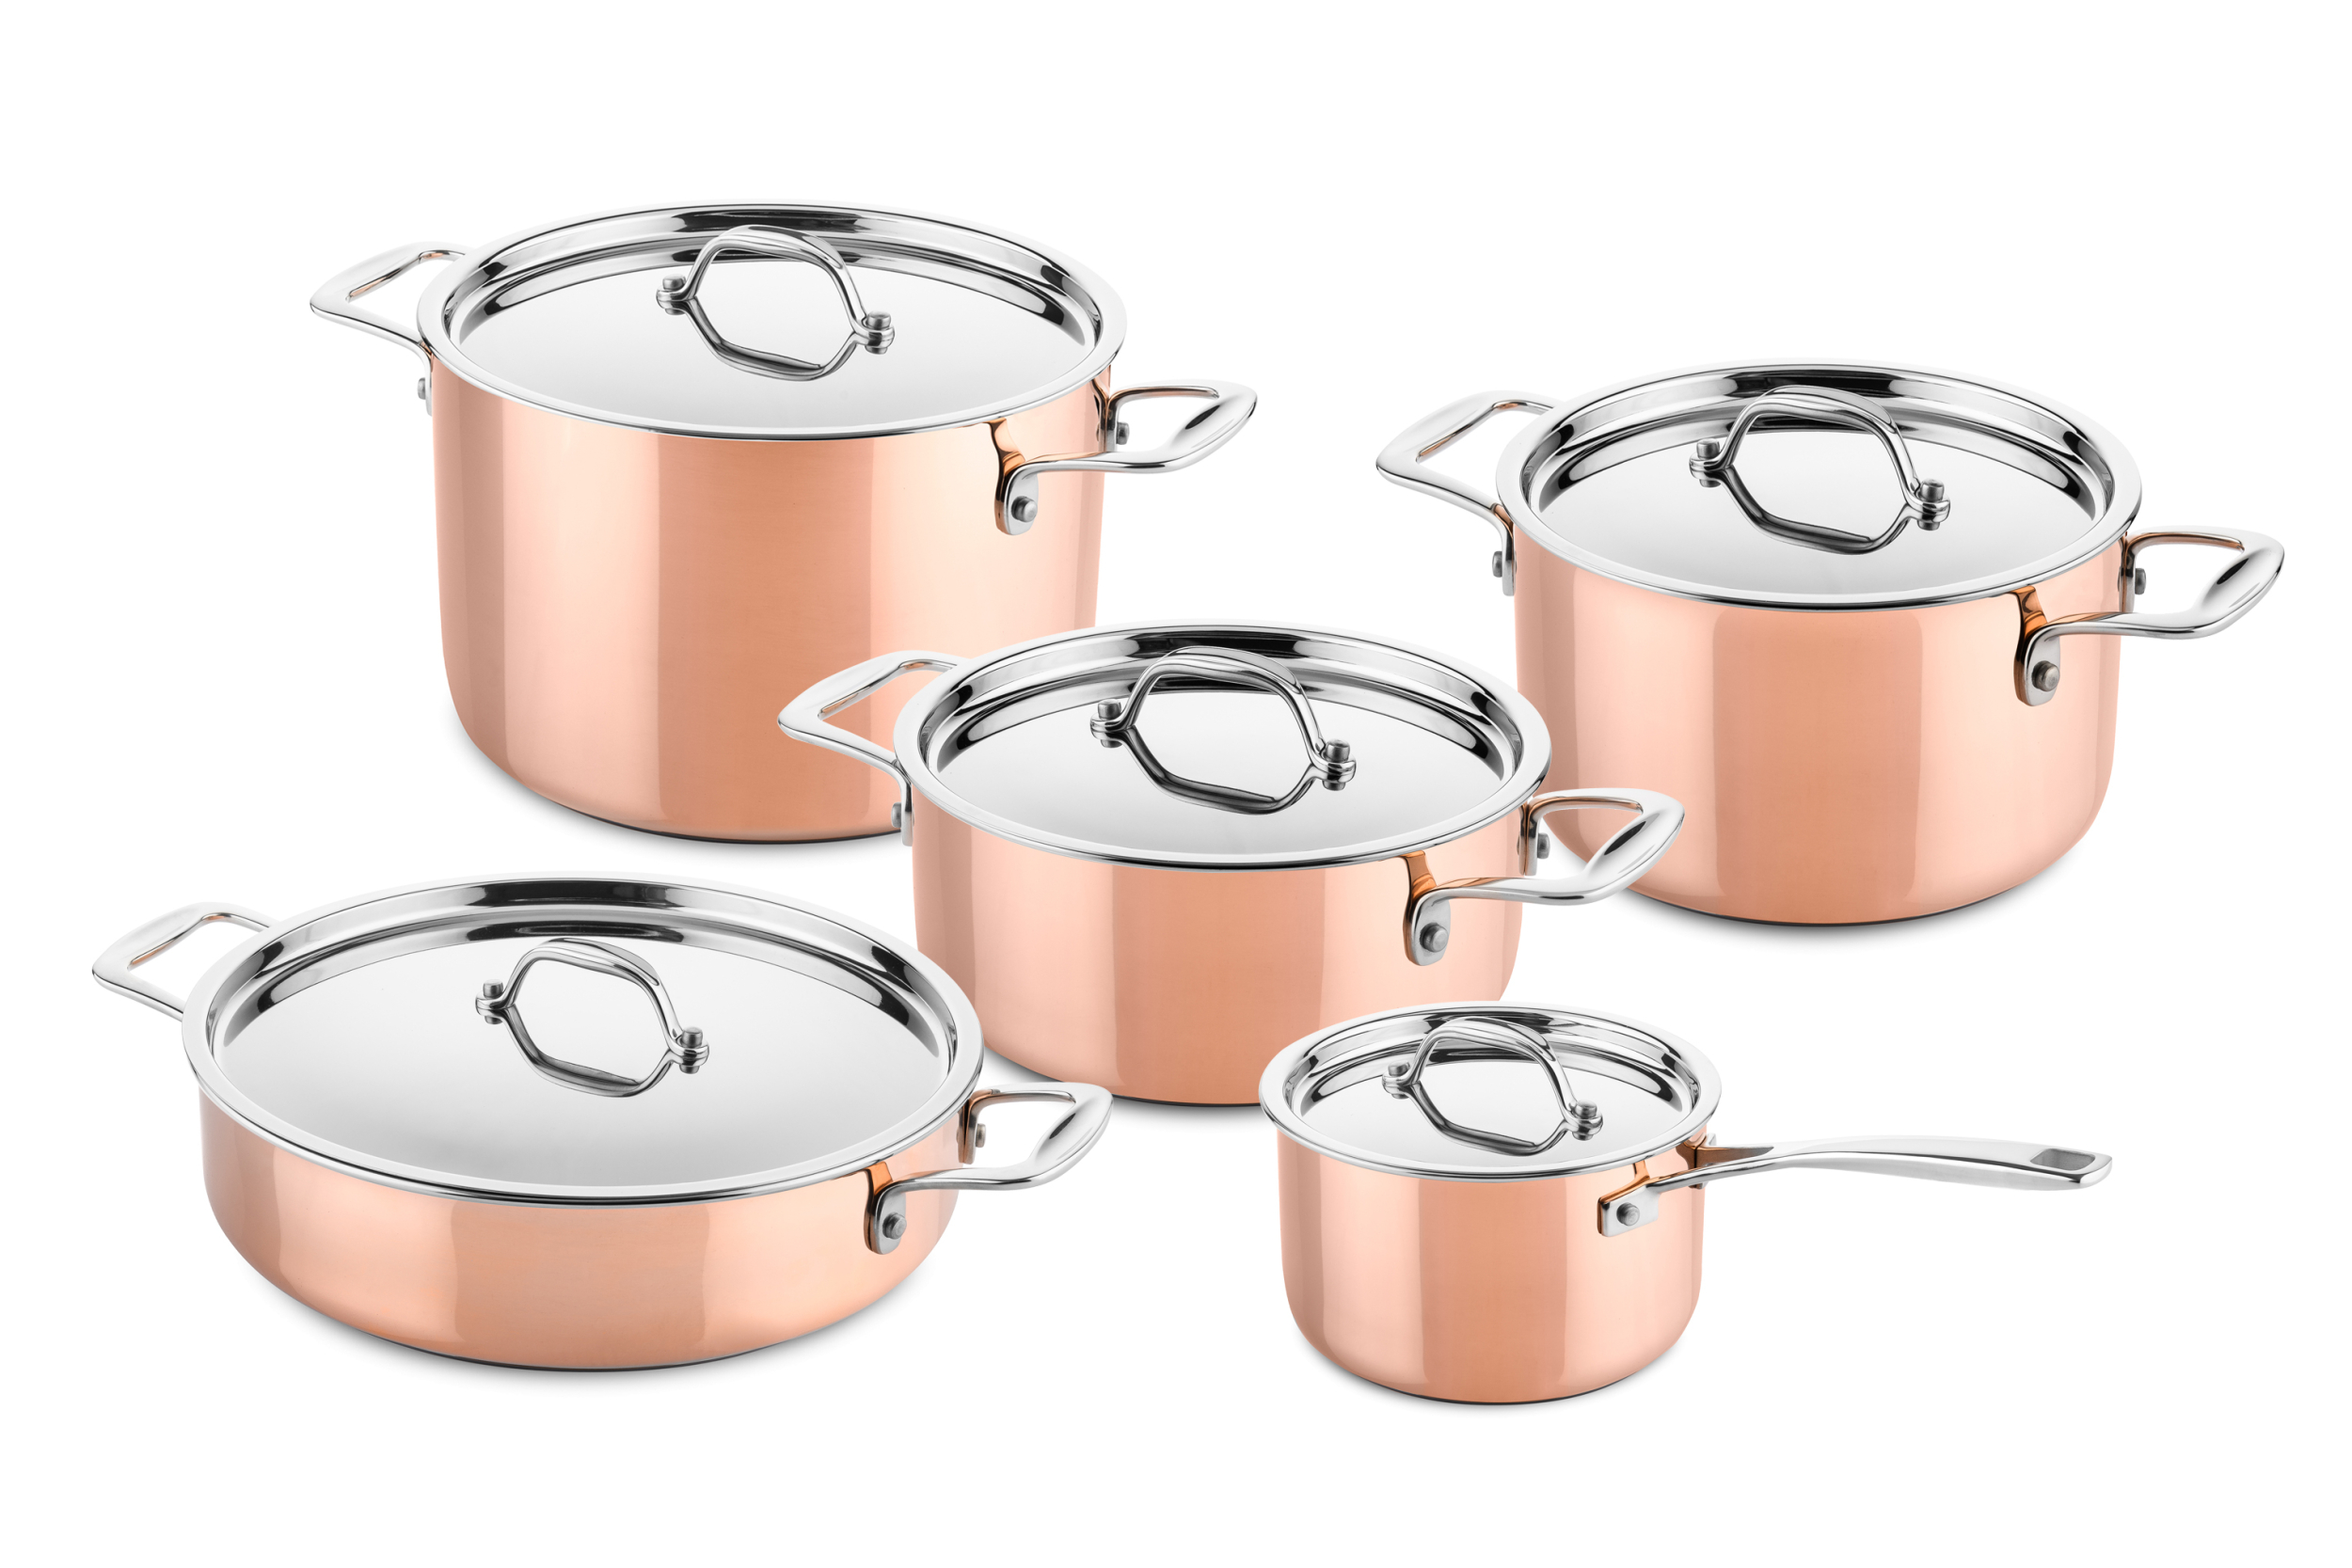 5 pcs copper cookware set (suitable for induction) - DUCQ cookware